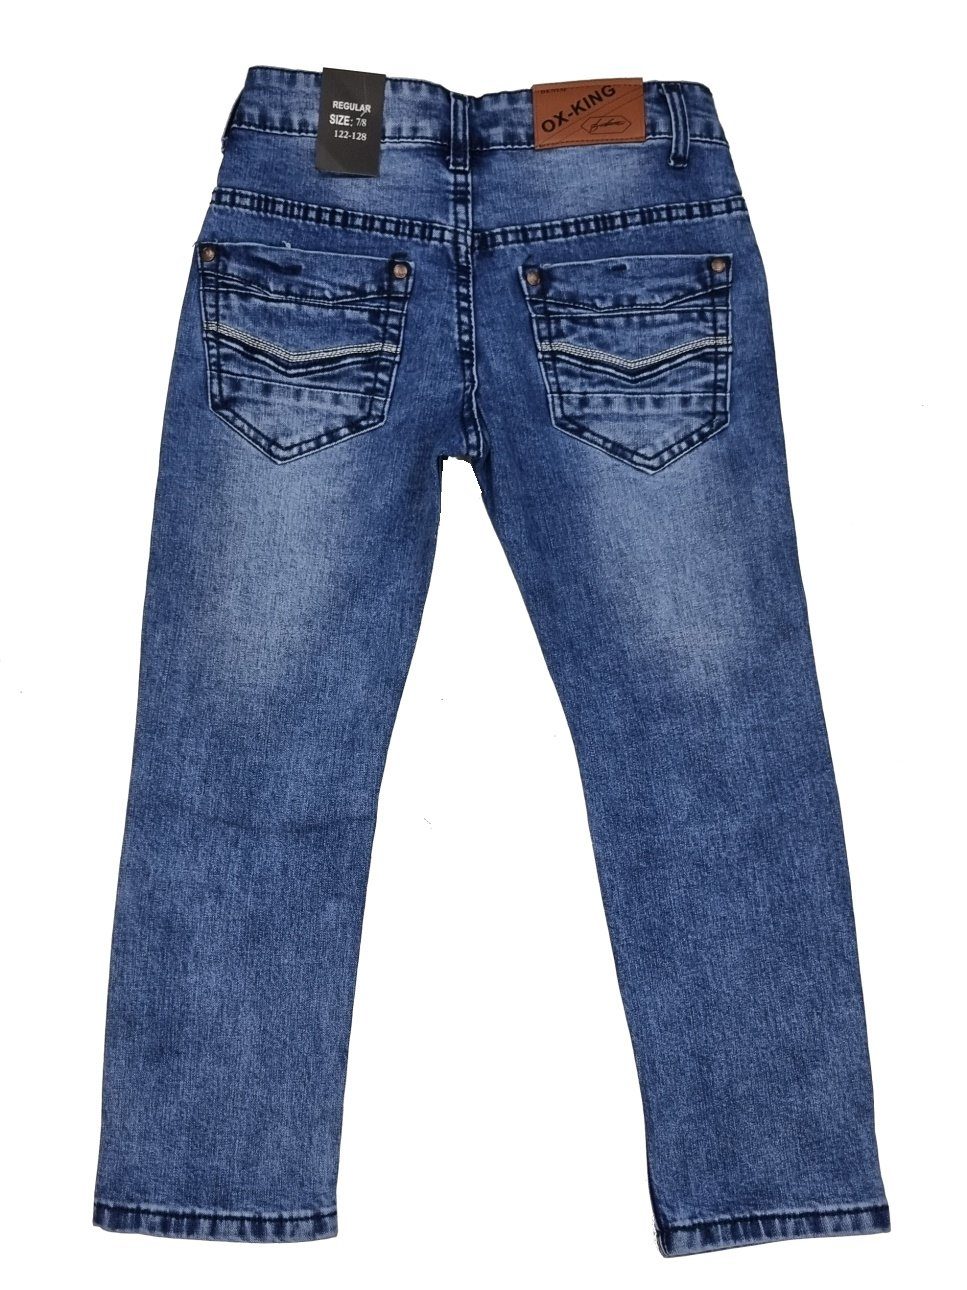 Jeans J626 Hose Fashion Kinderhose Jeans Jungen Jeanshose, Boy Kinder Bequeme